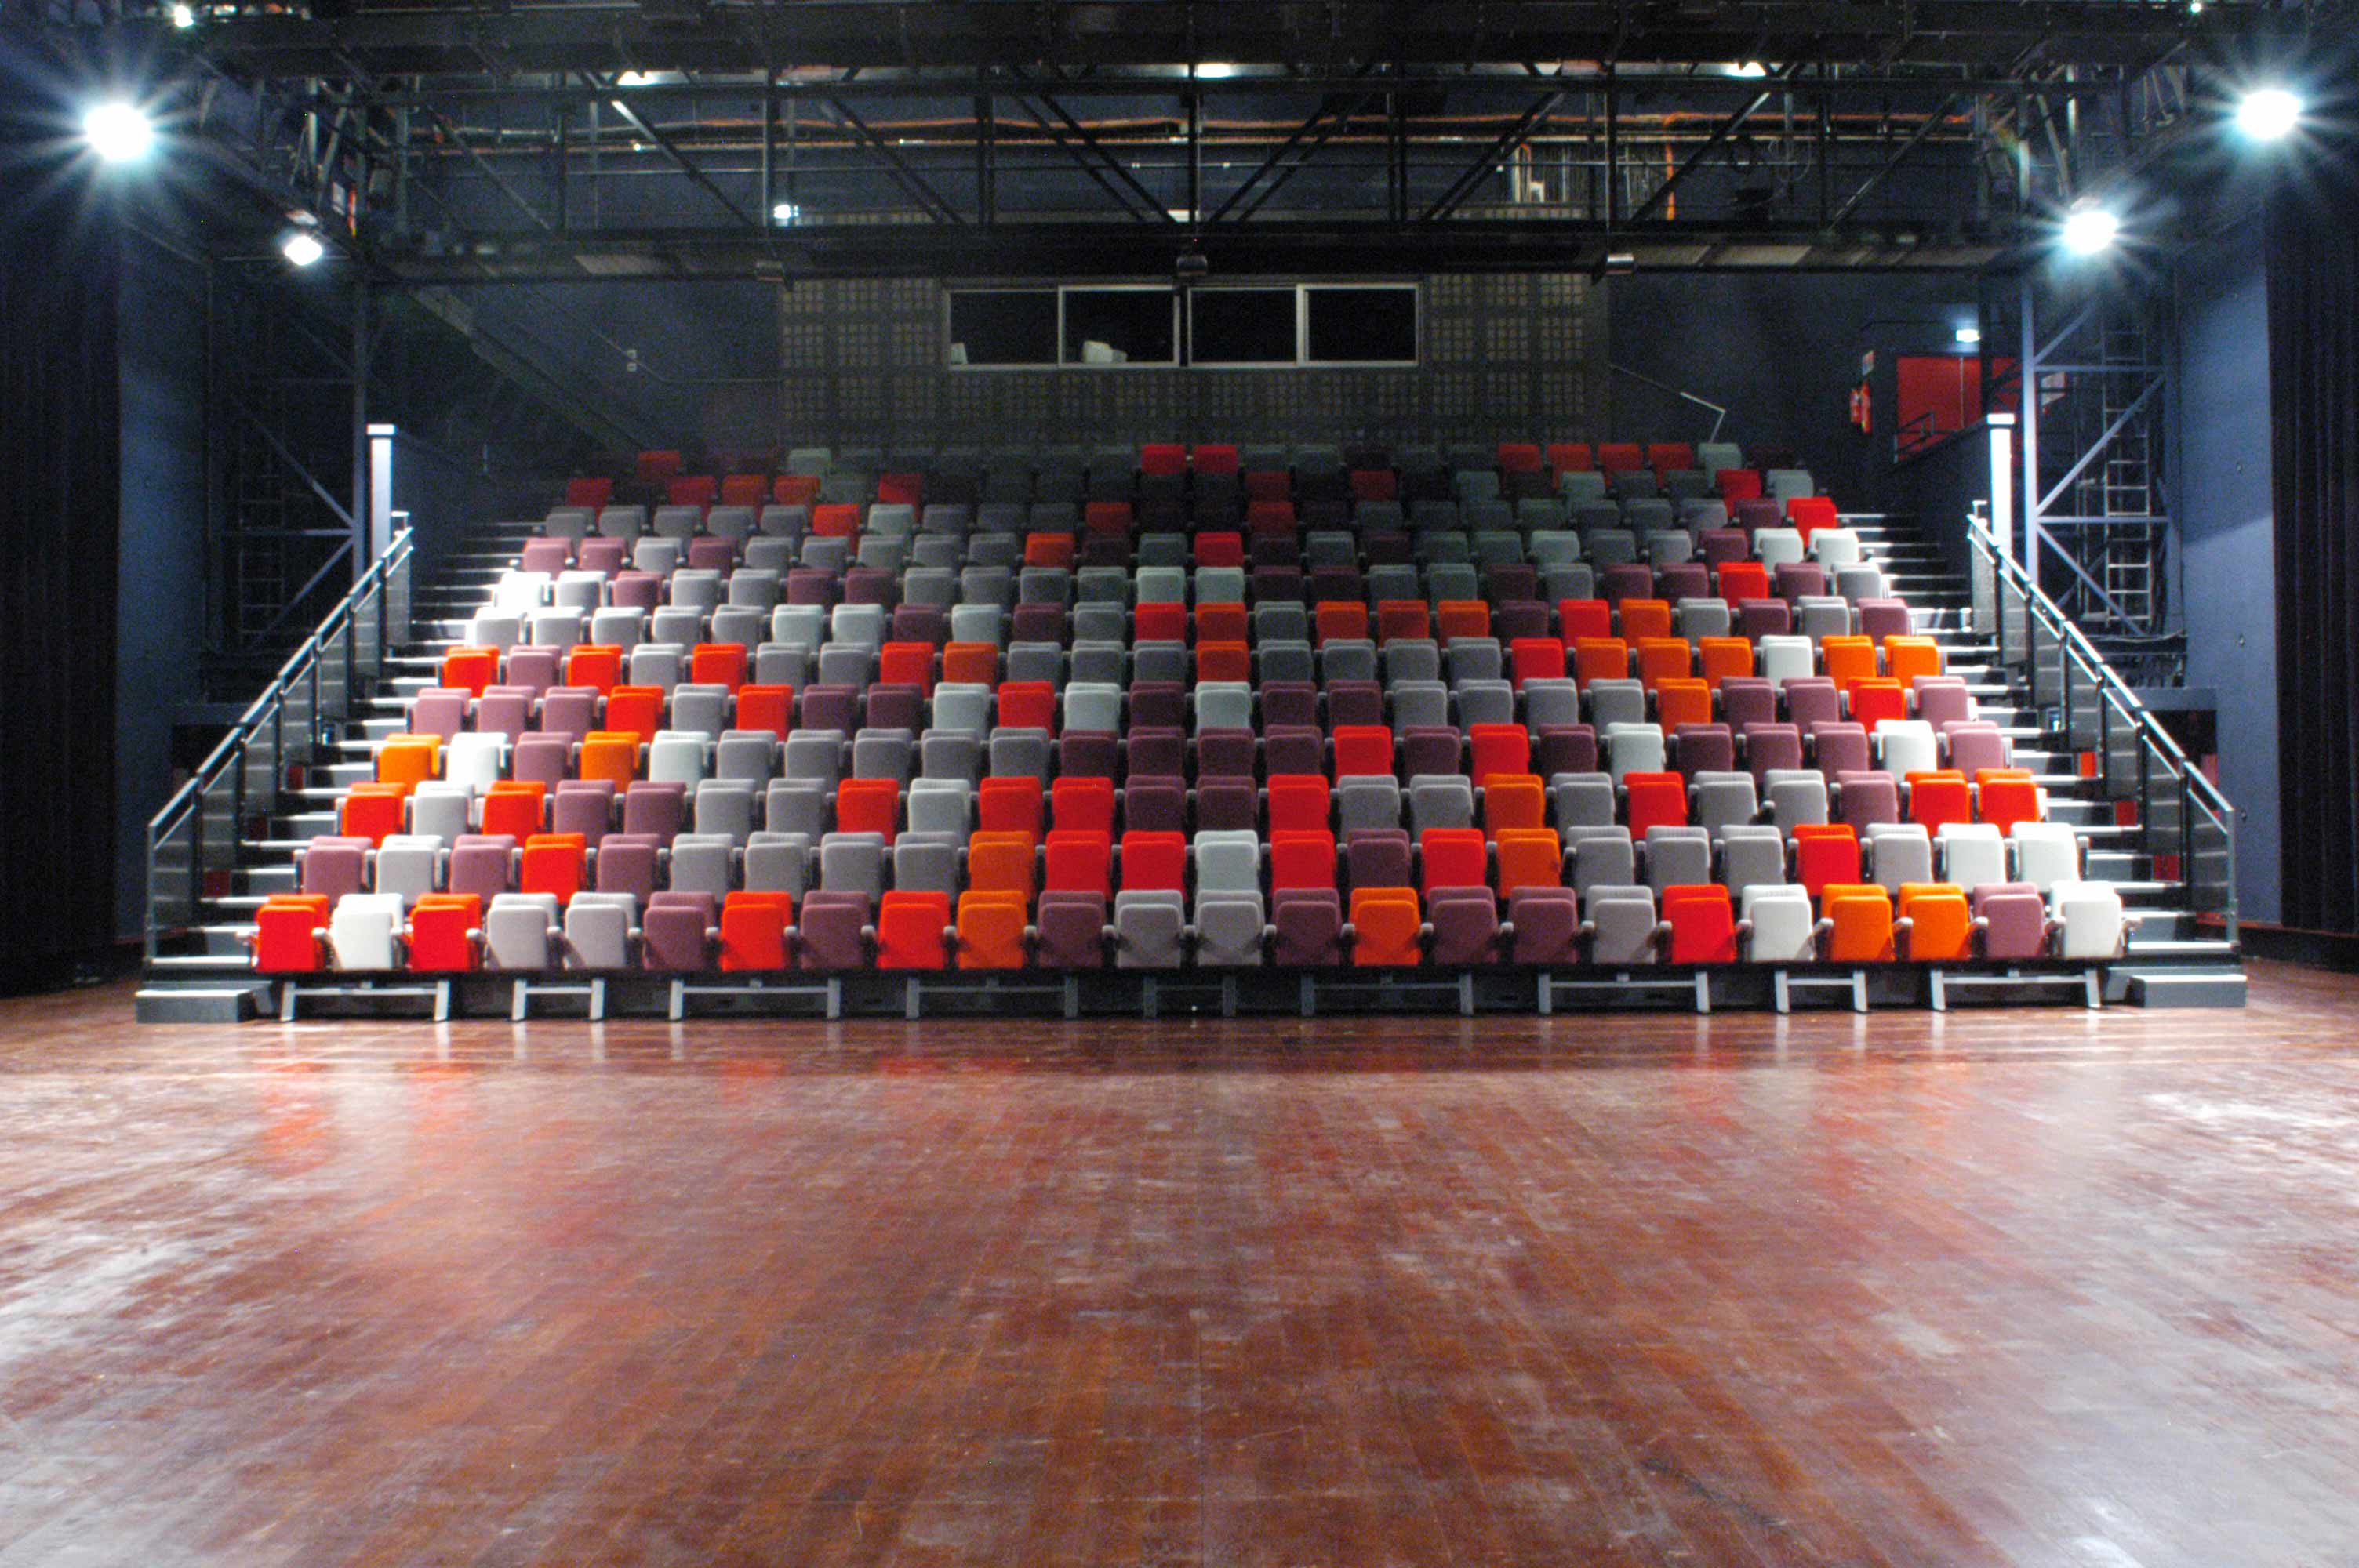 Théâtre de l'Idéal : Grande Salle. Capacité de 320 places. Plateau de 210m² - arrière scène de 45m². Salle entièrement équipée pour diffusion son, lumière et vidéo. Configuration entièrement modulable en grande halle ou gradins.